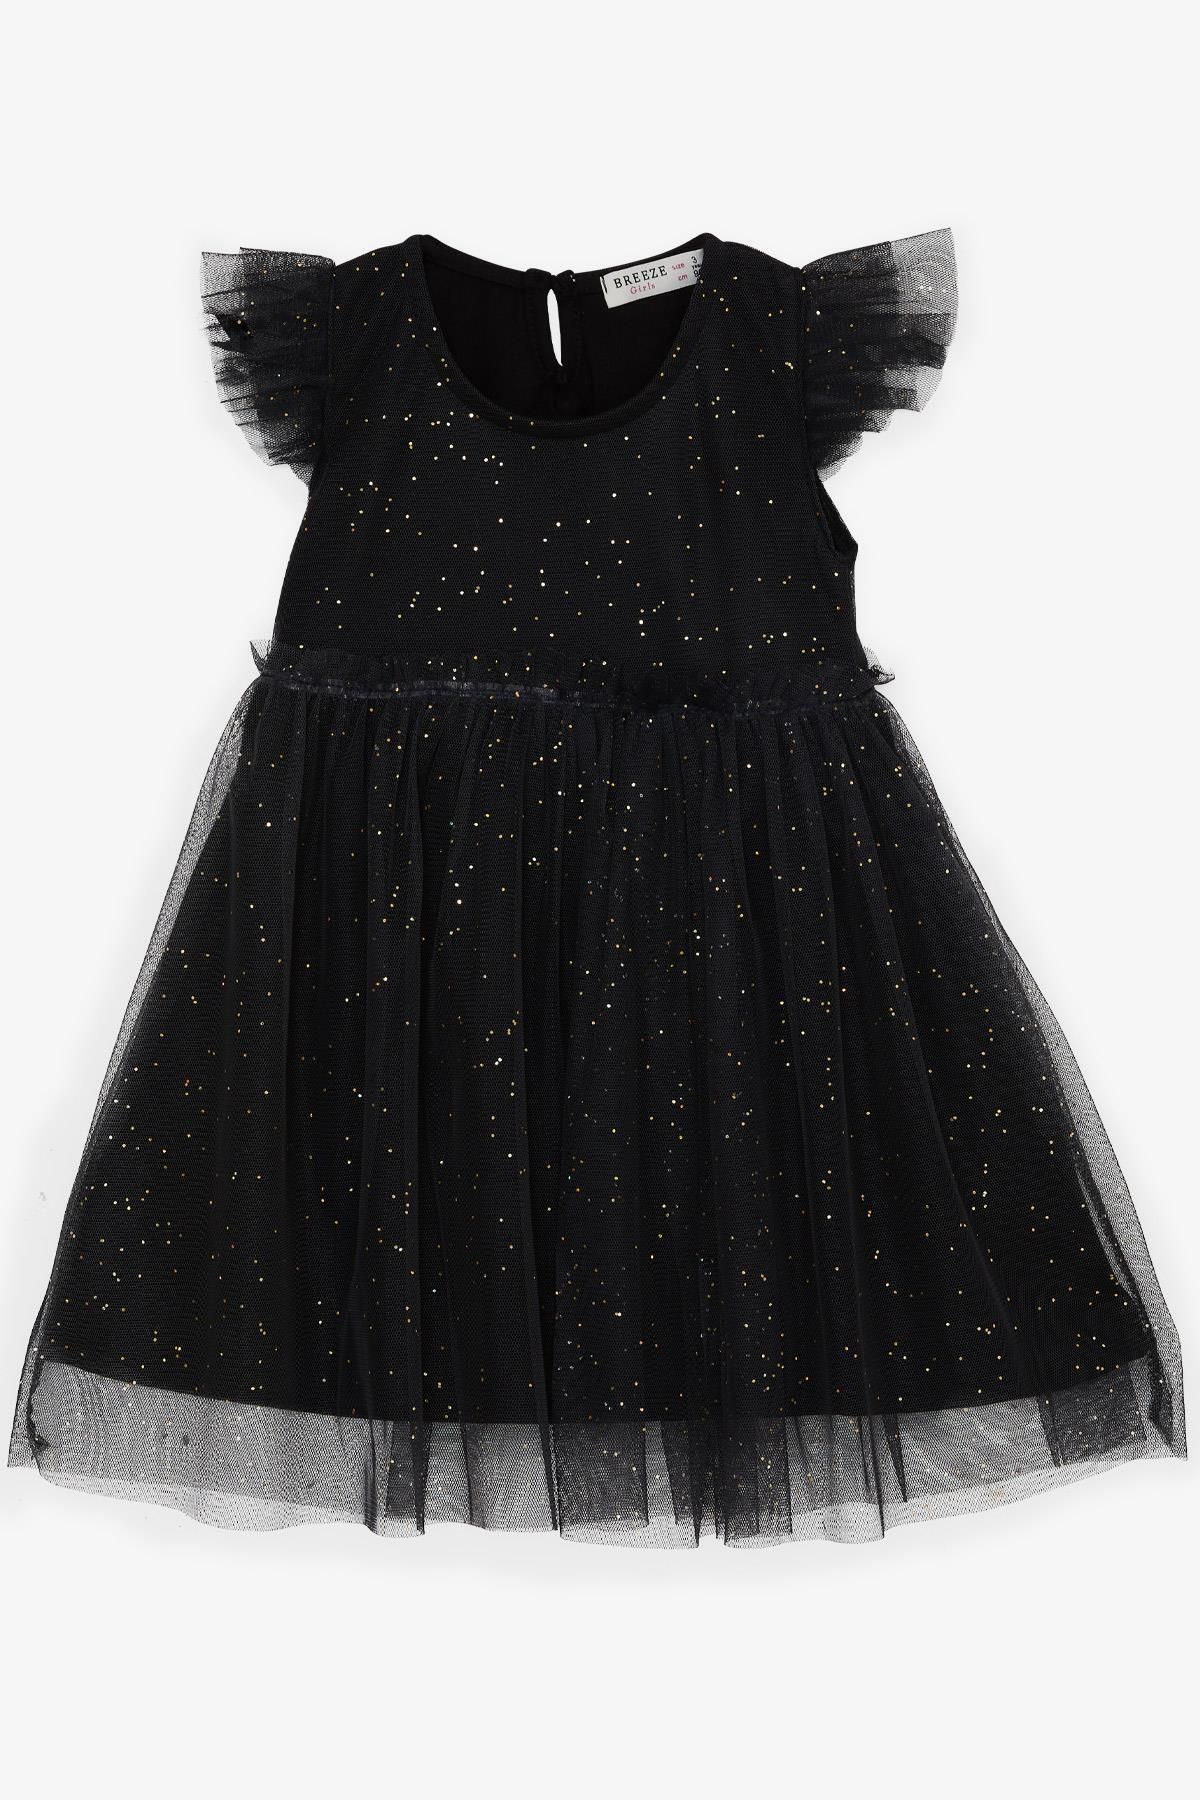 Breeze Kız Çocuk Elbise Simli Tüllü Fırfırlı 3-7 Yaş, Siyah